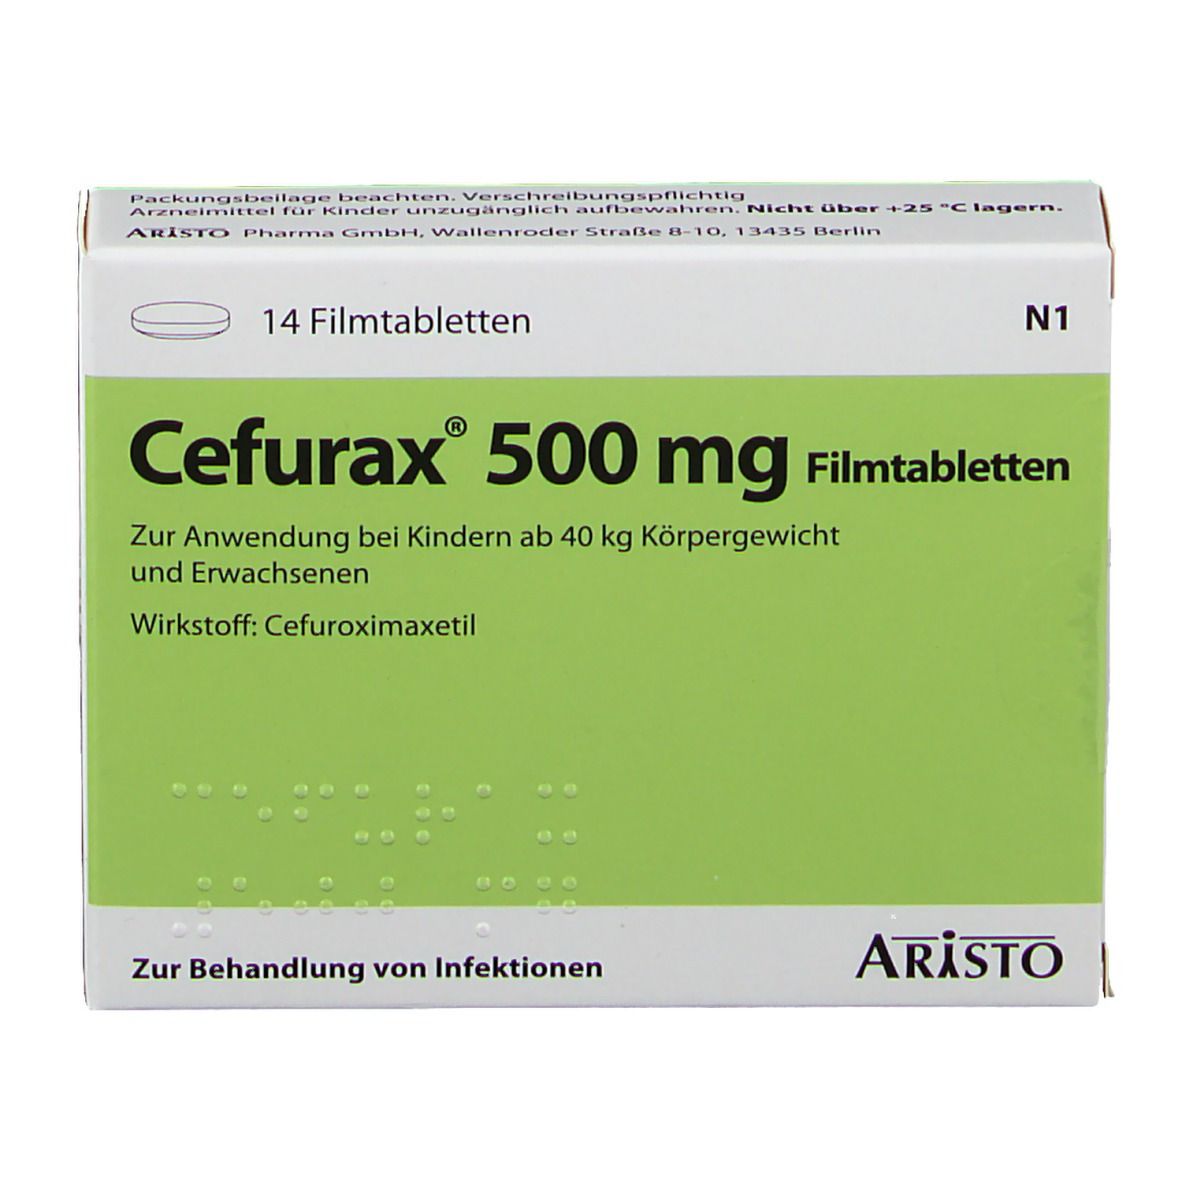 Cefurax ® 500 mg.